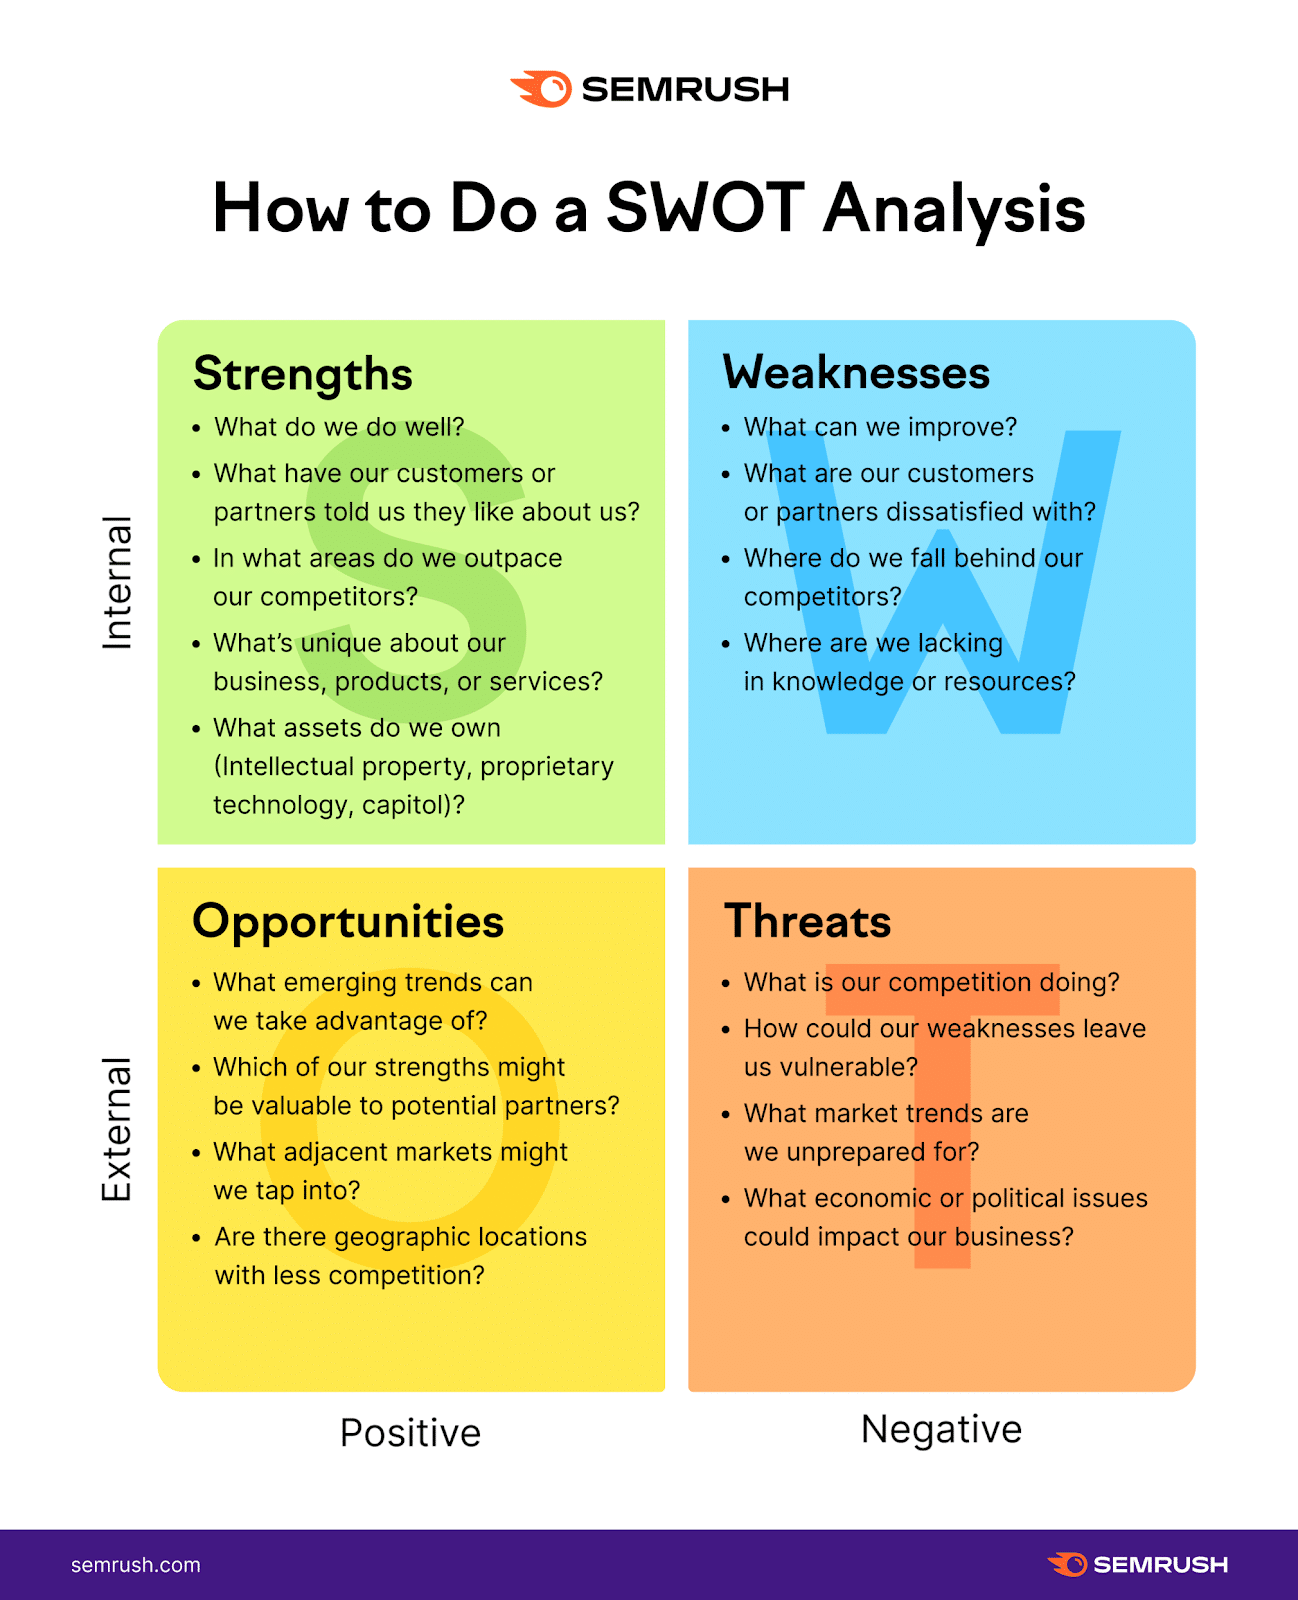 Semrush SWOT Analysis